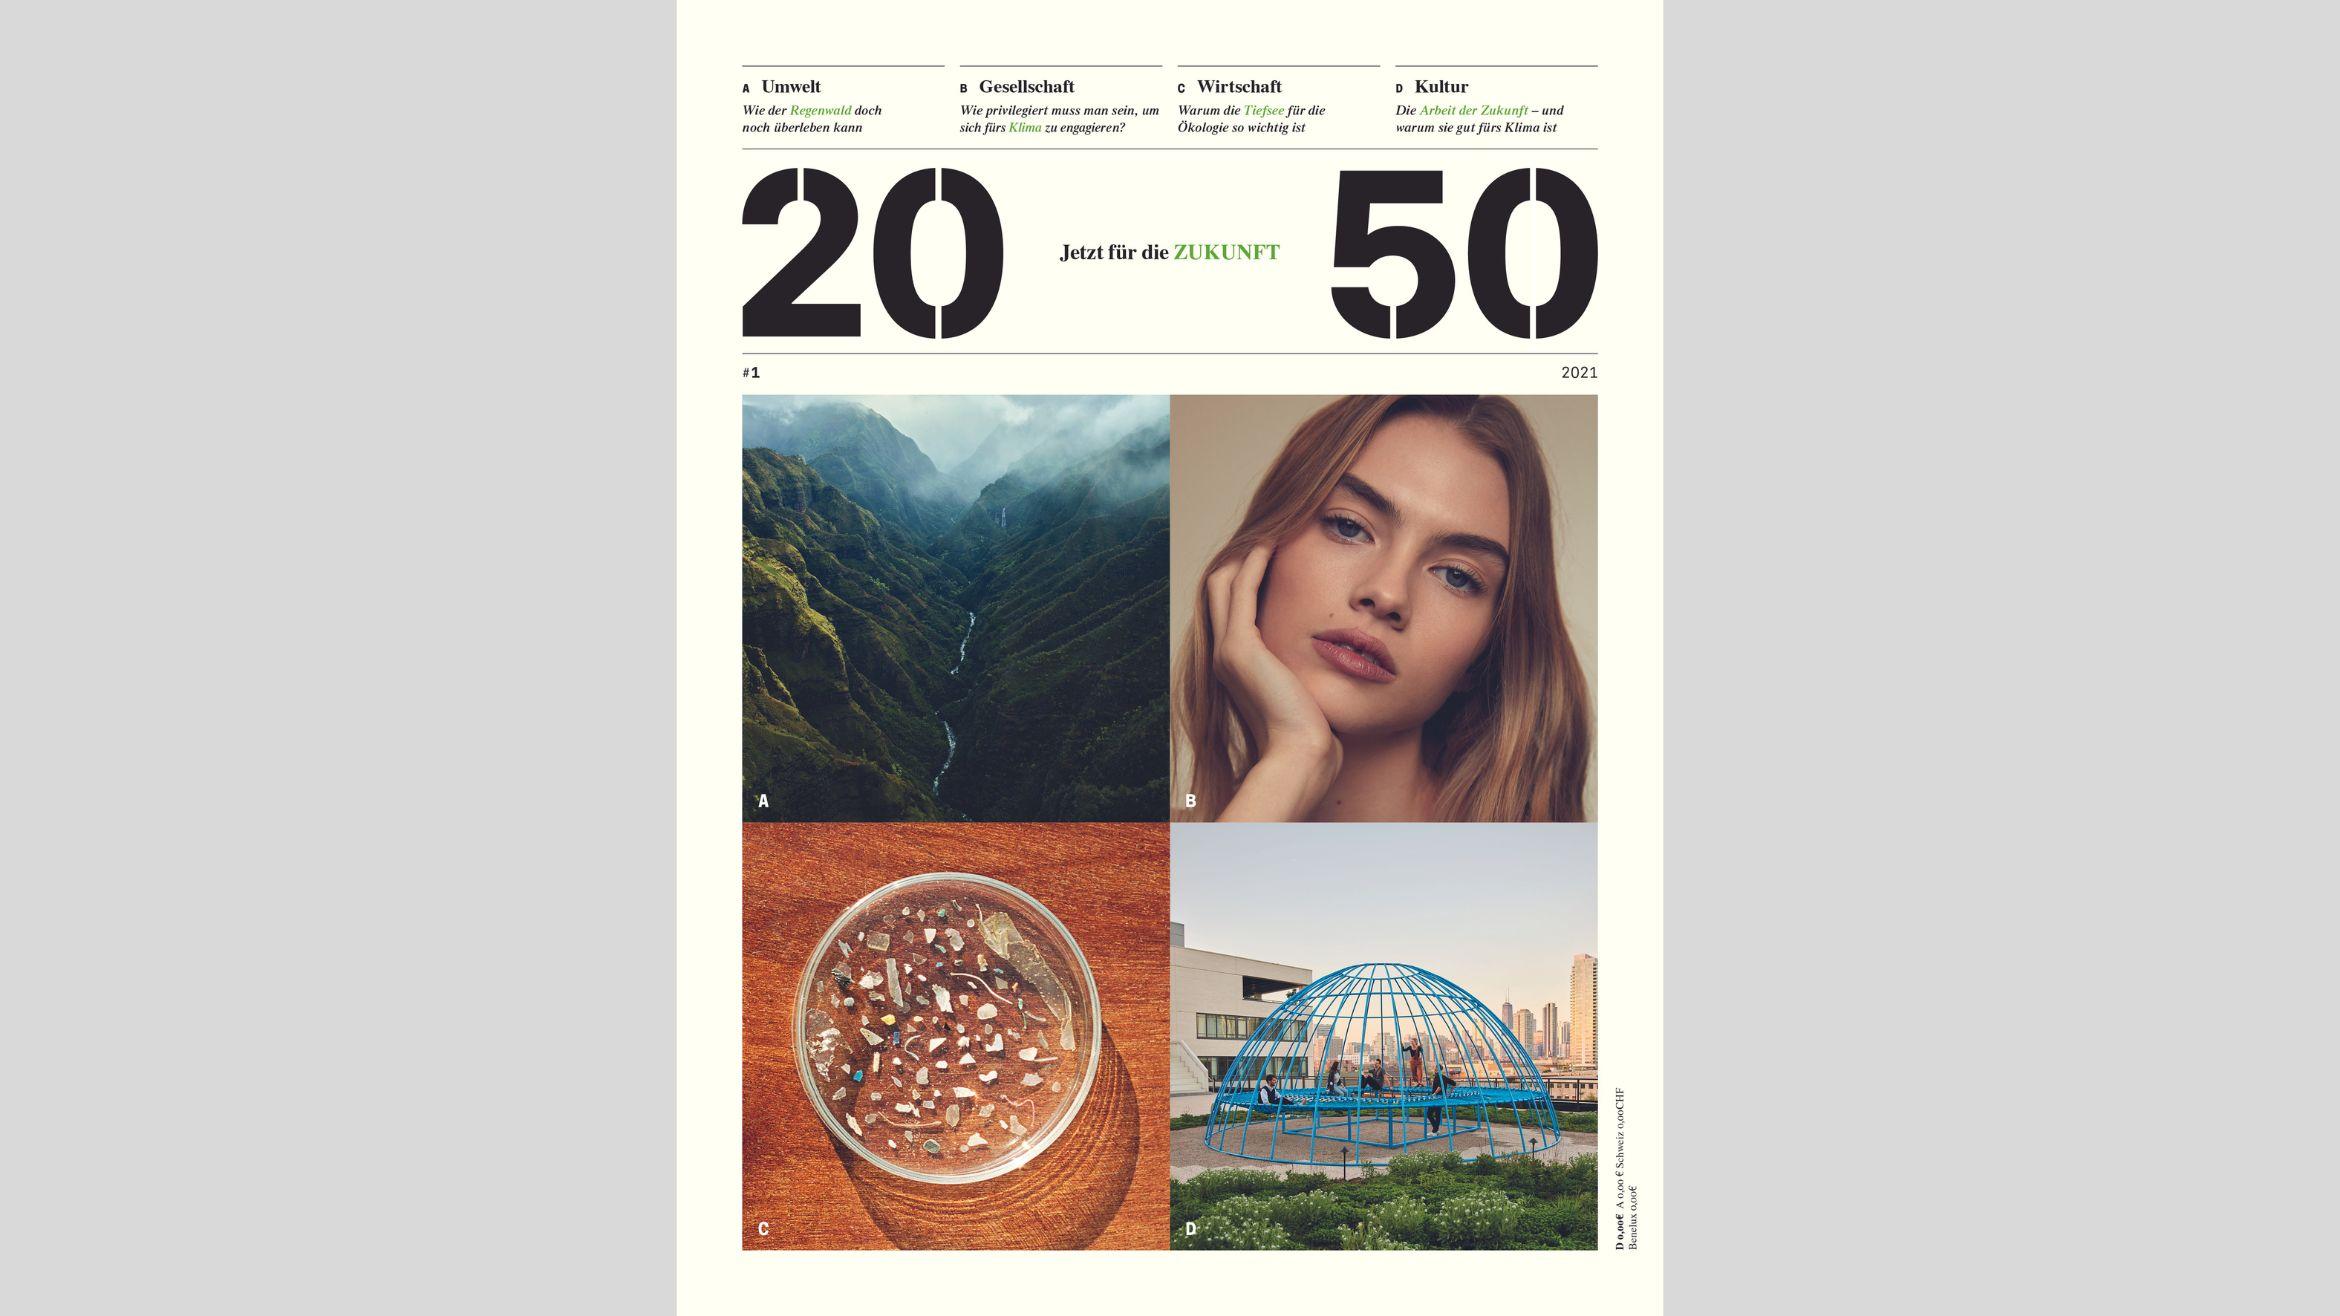 Das Cover des neuen Burda-Magazins "2050" –